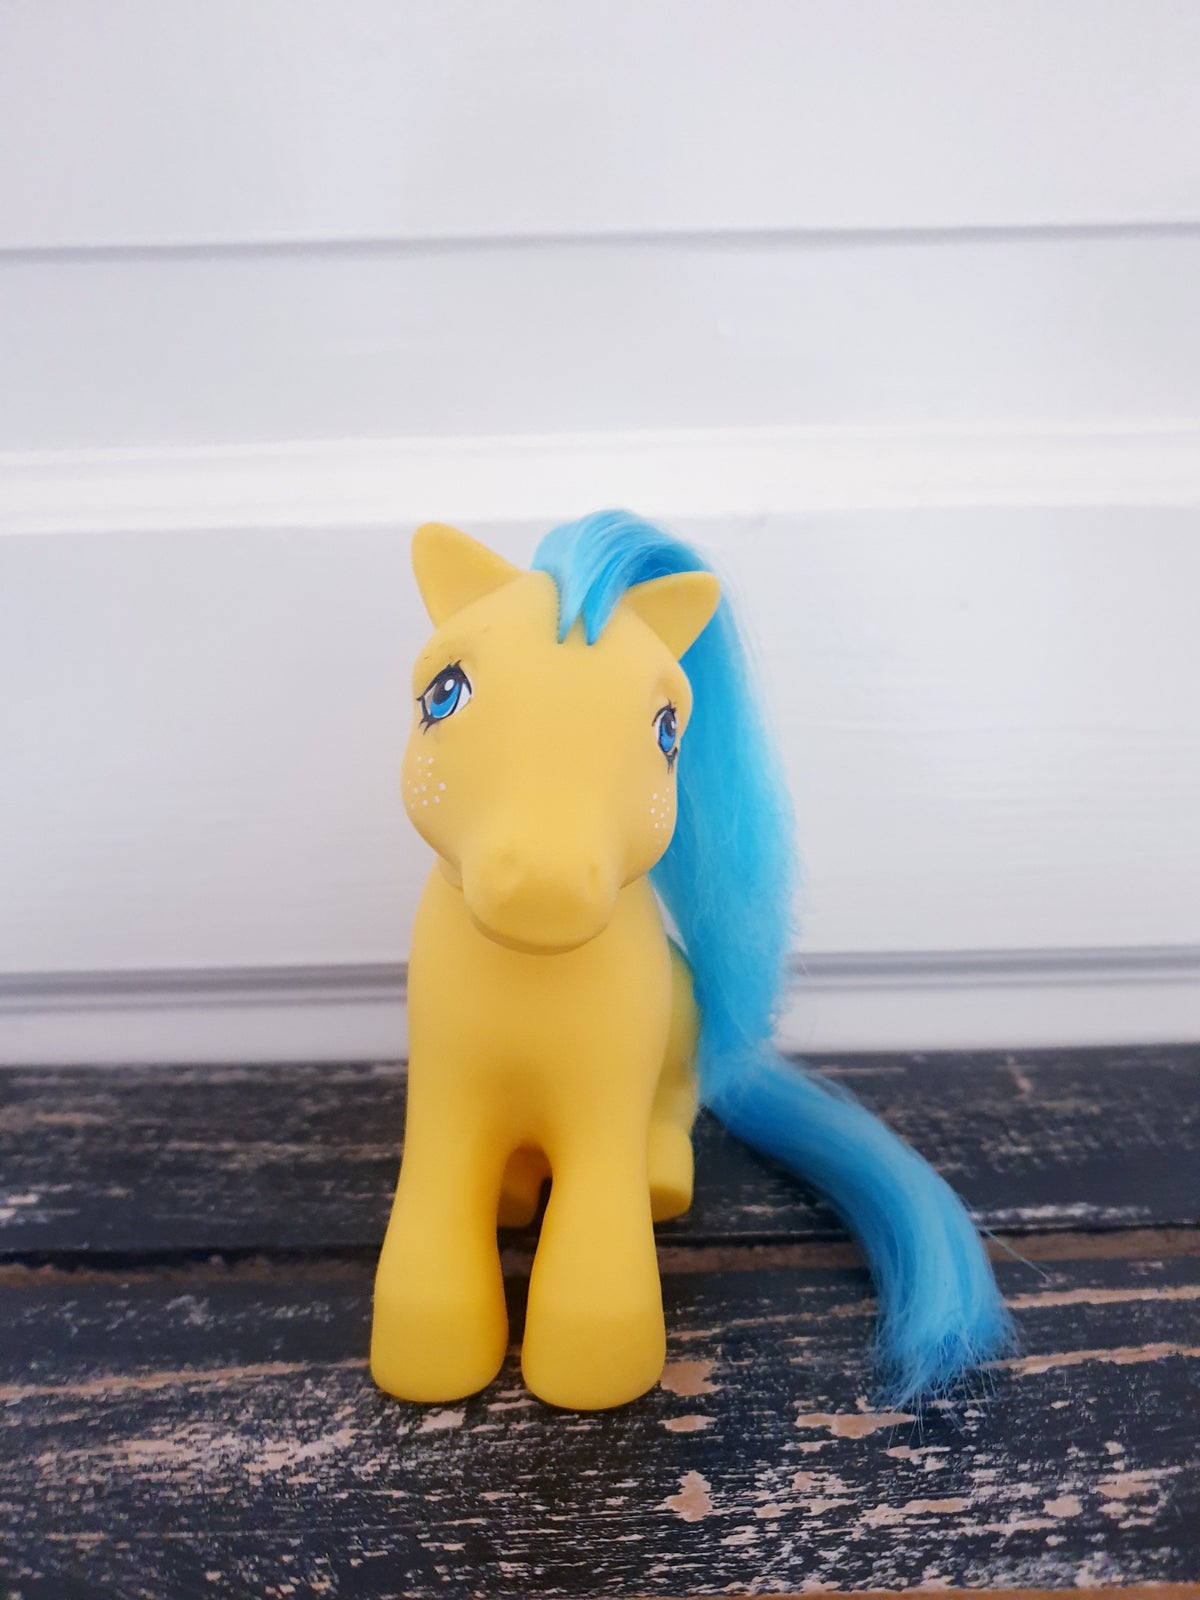 My Little Pony, Hasbro